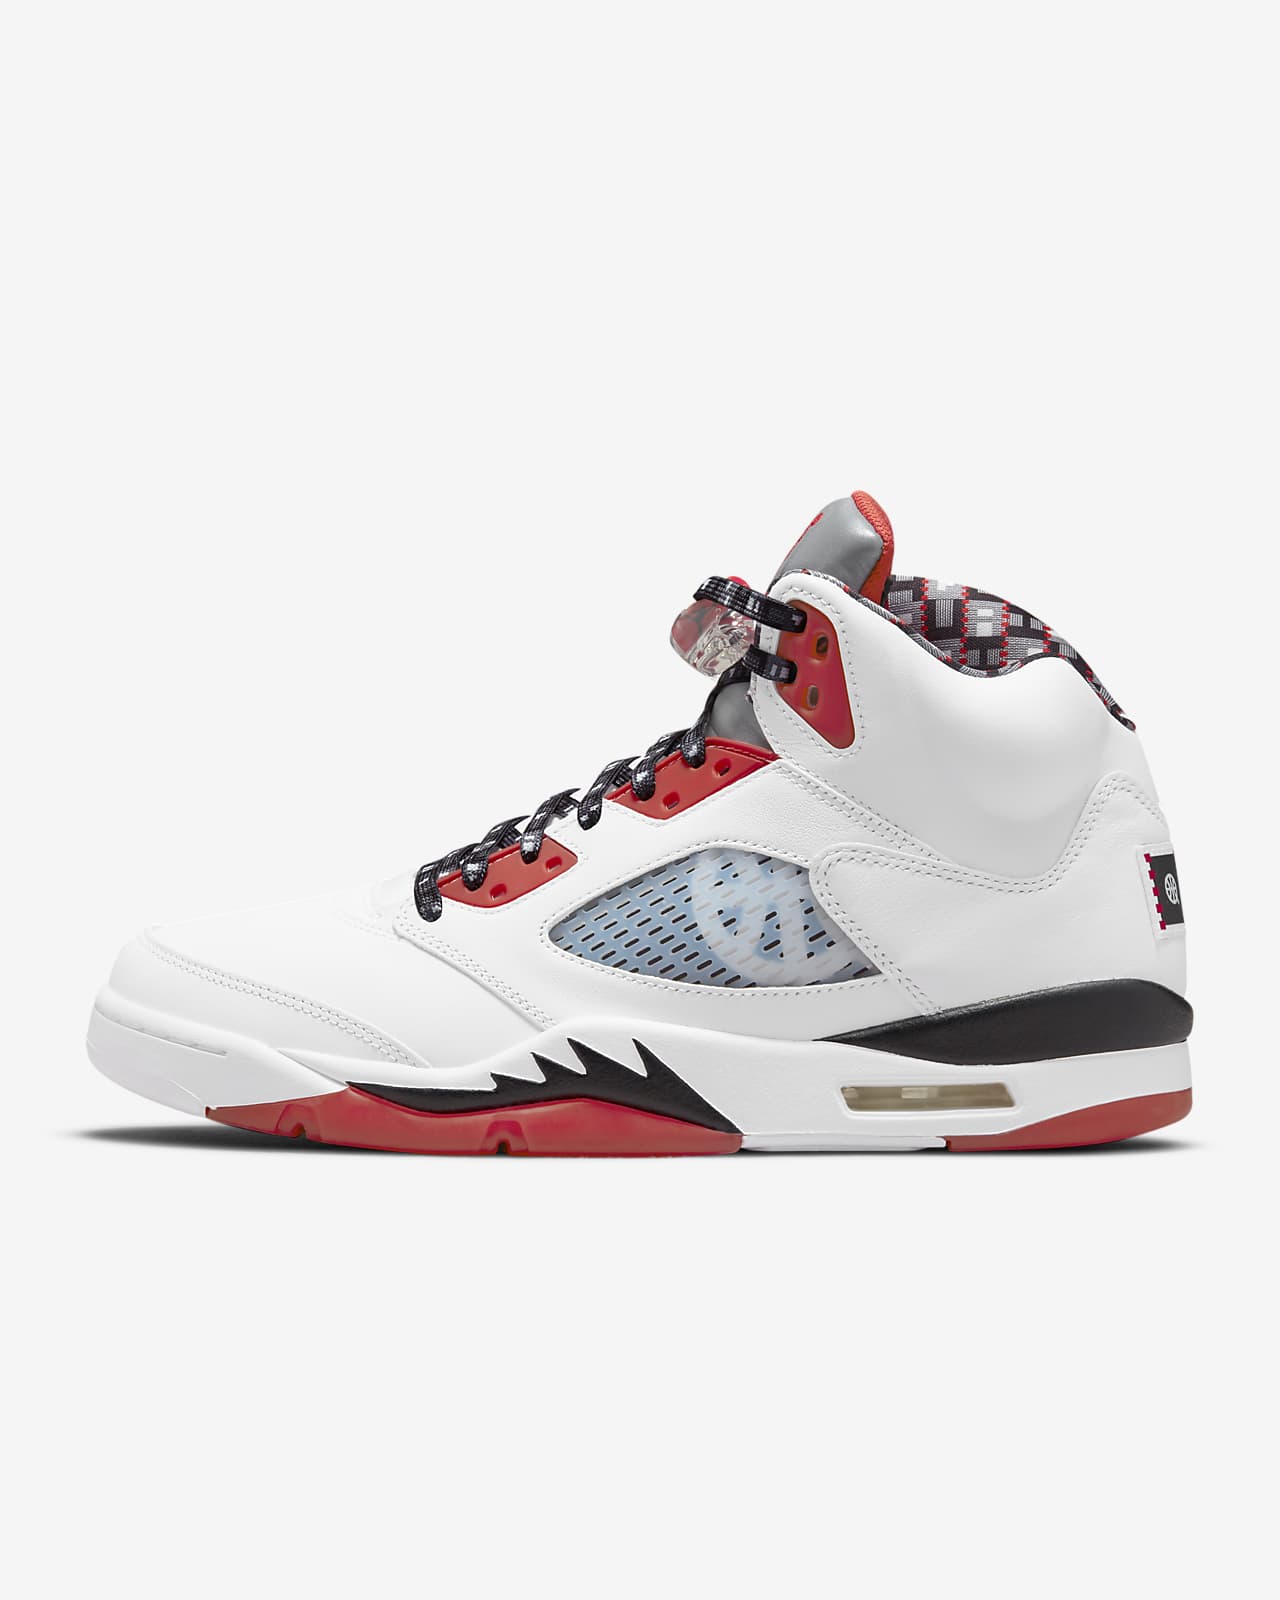 Air Jordan 5 Retro Quai 54 férficipő. Nike HU